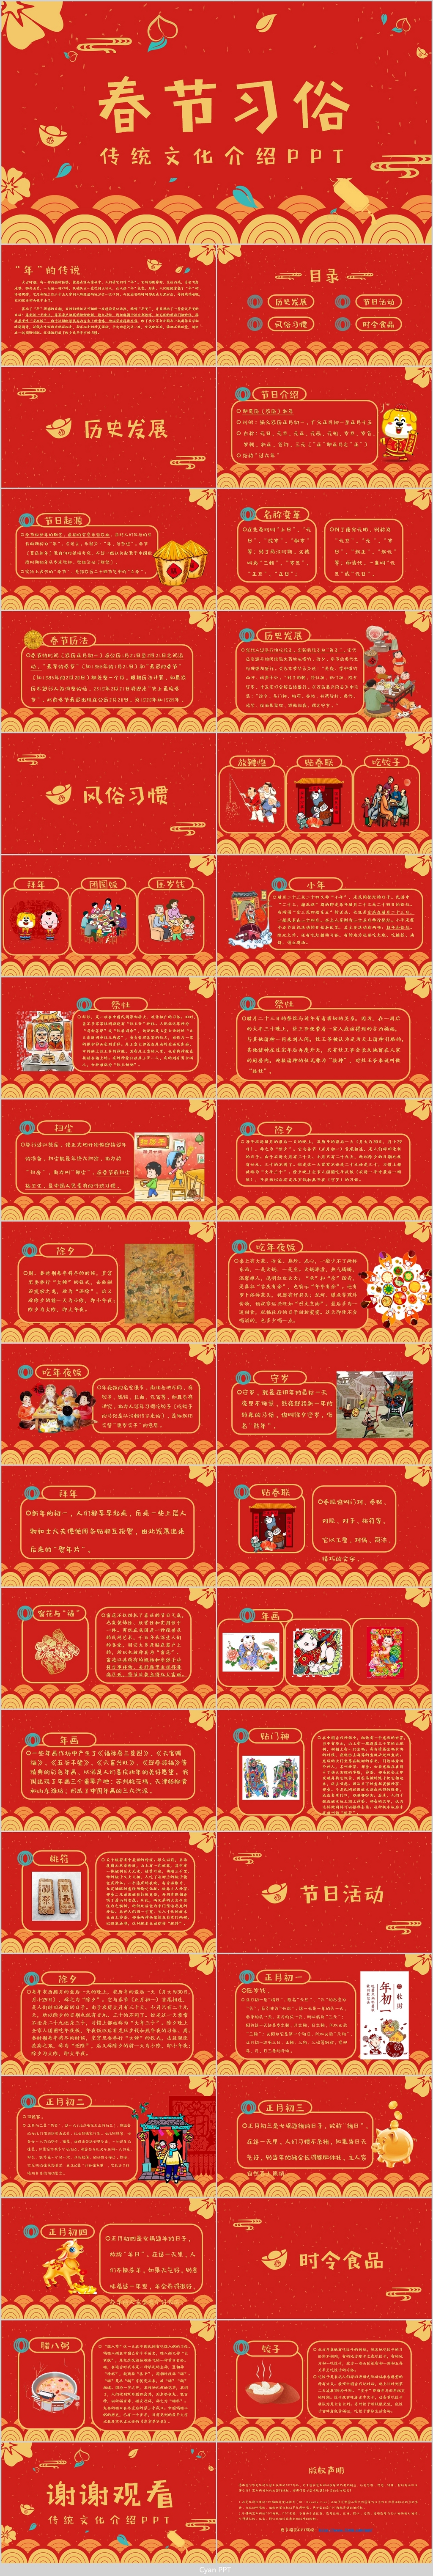 红色大气喜庆图文结合春节习俗主题班会节日介绍PPT模板 